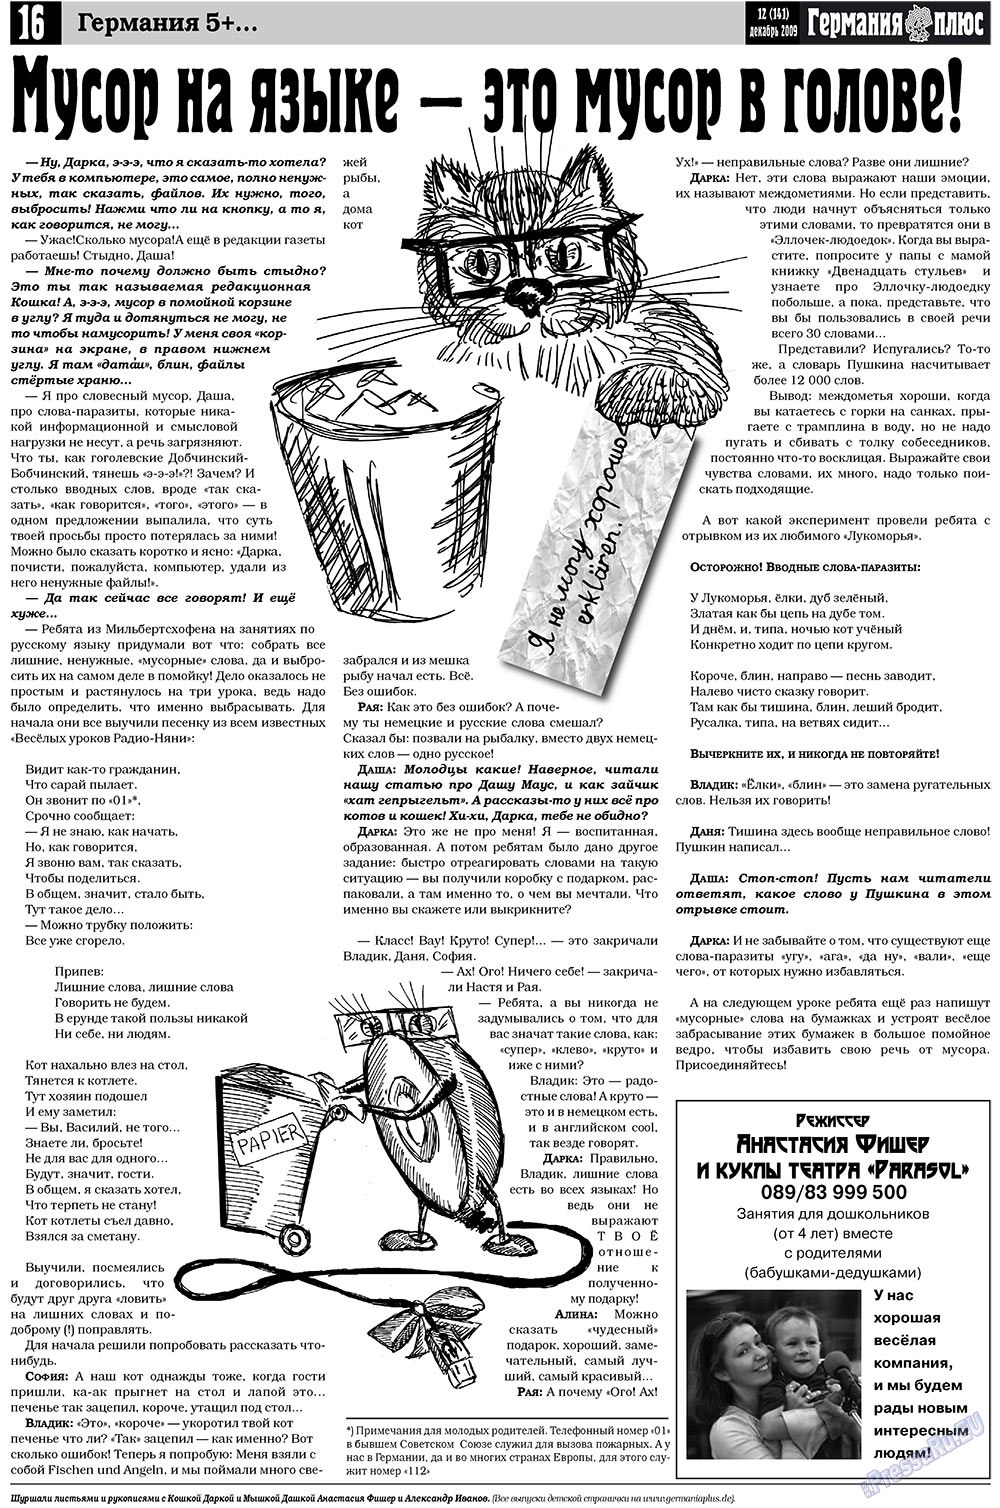 Германия плюс (газета). 2009 год, номер 12, стр. 16